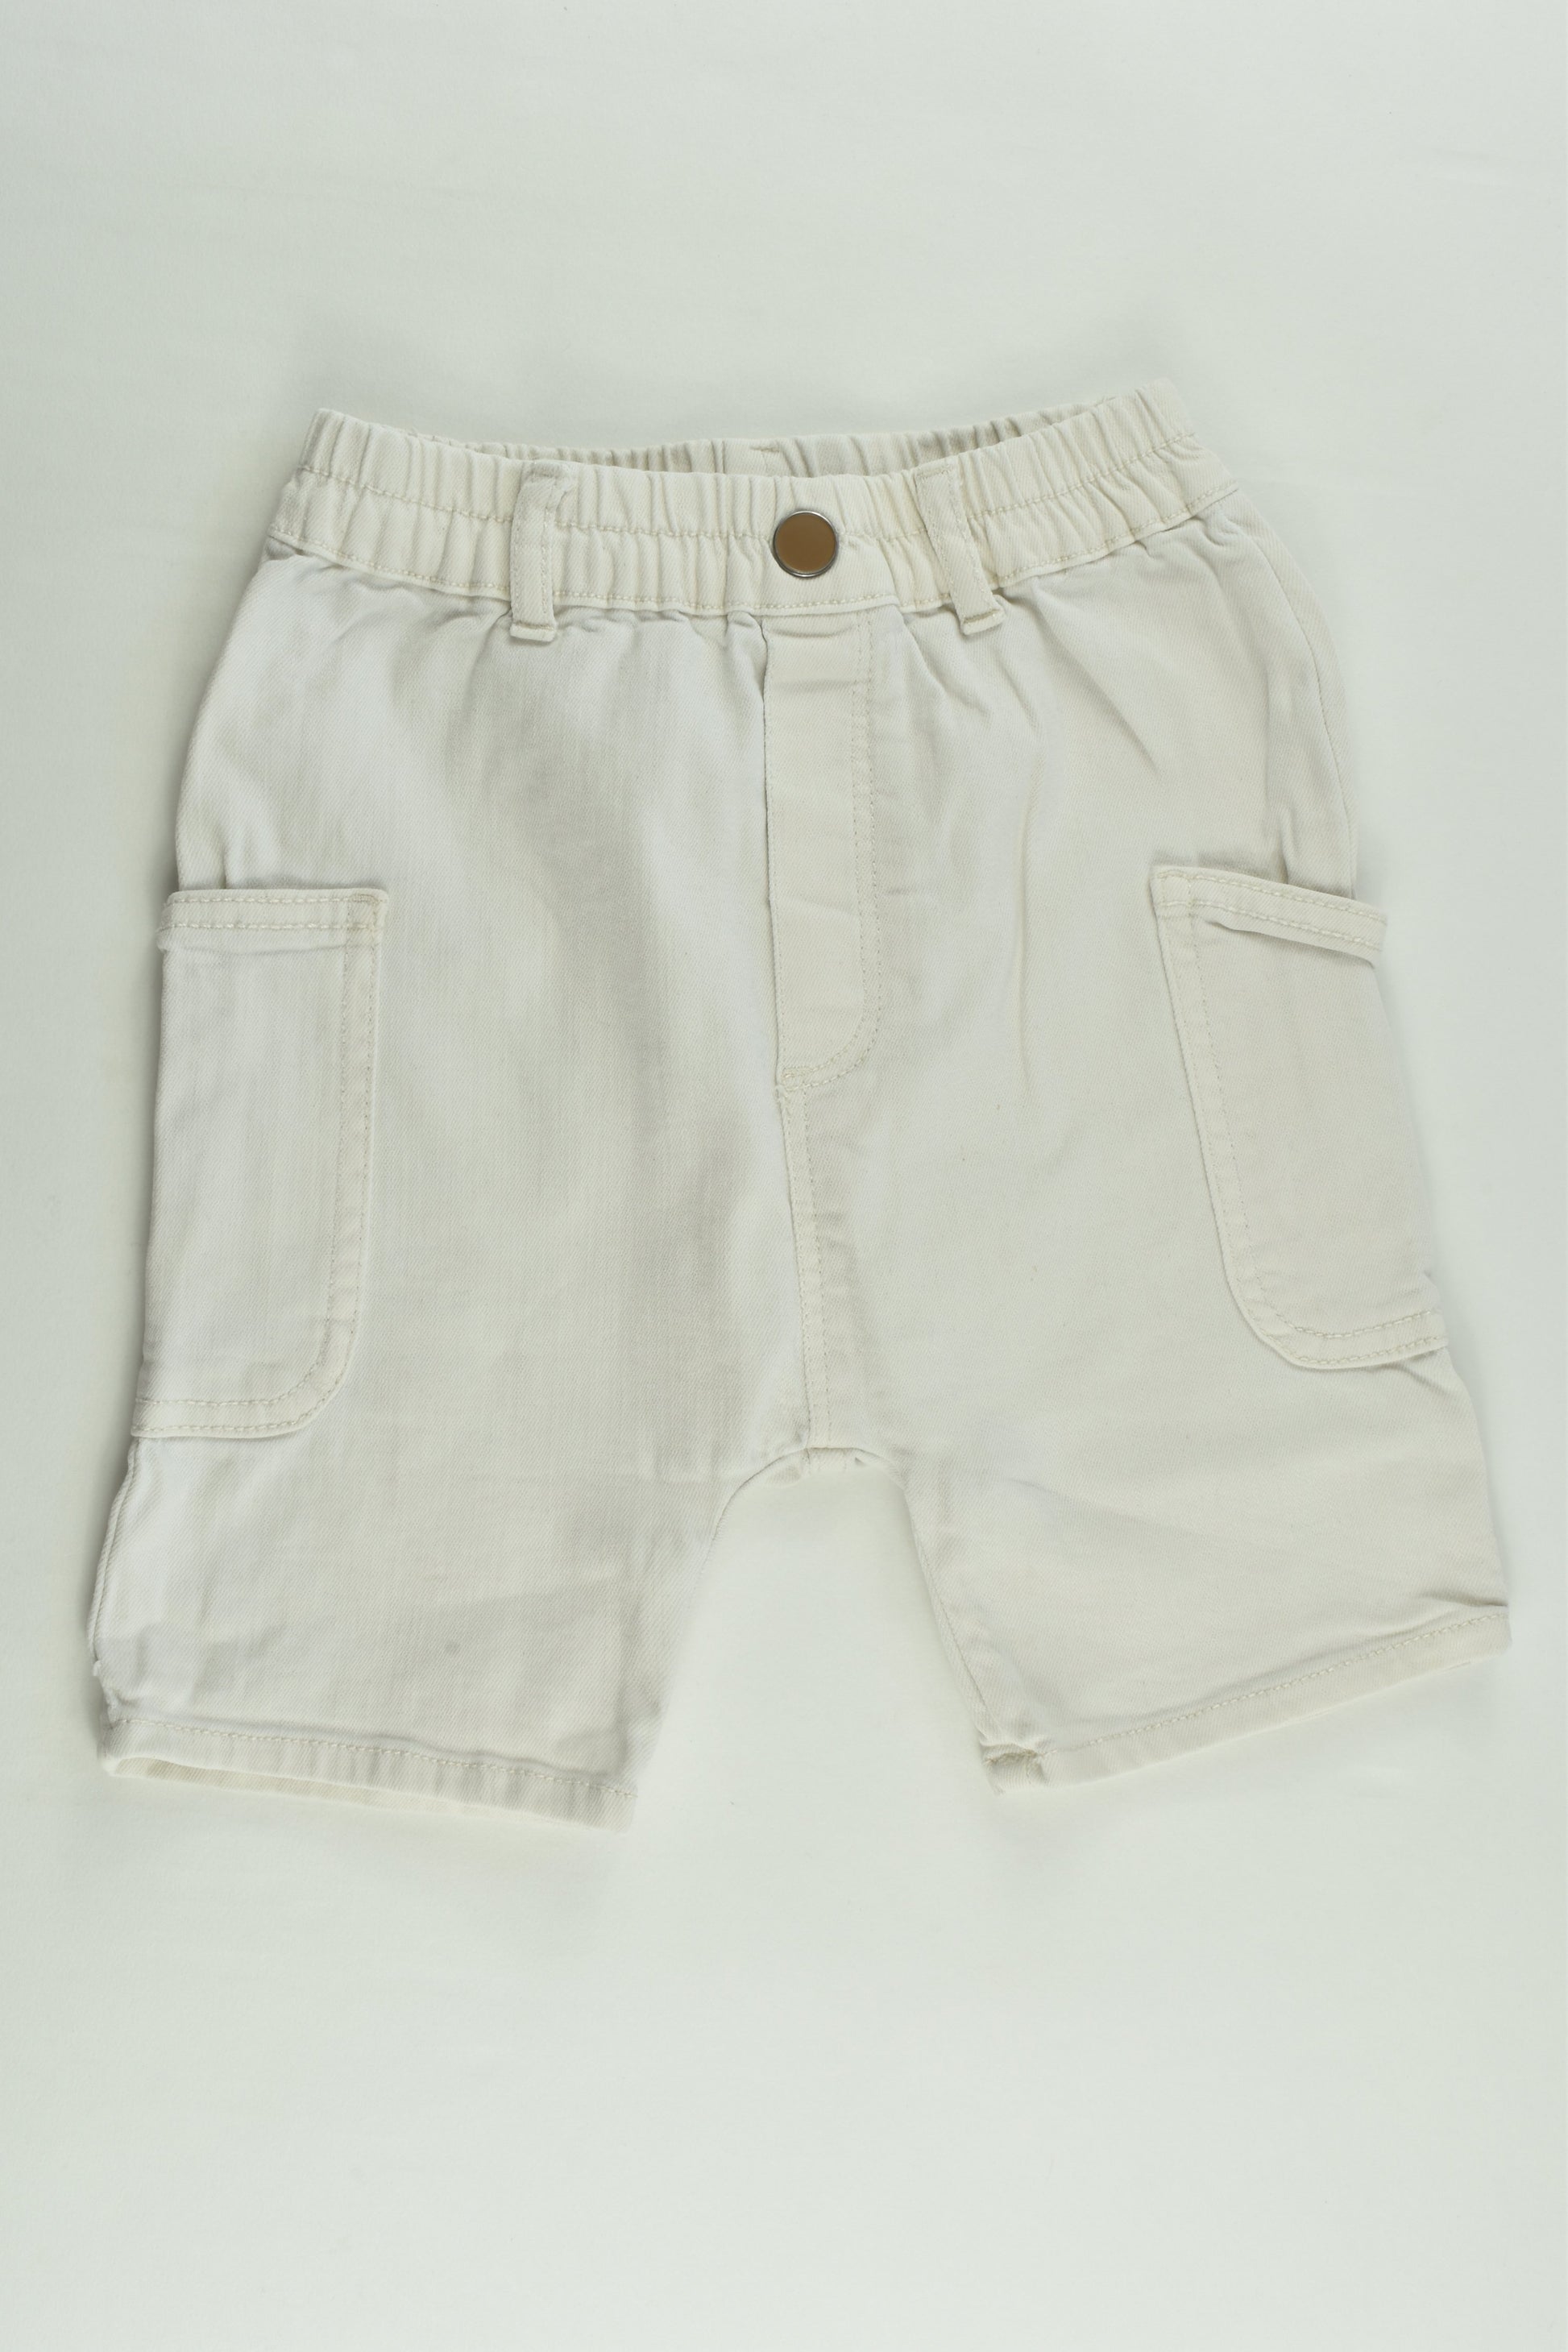 Zara Size 3-4 (104 cm) Stretchy Denim Shorts